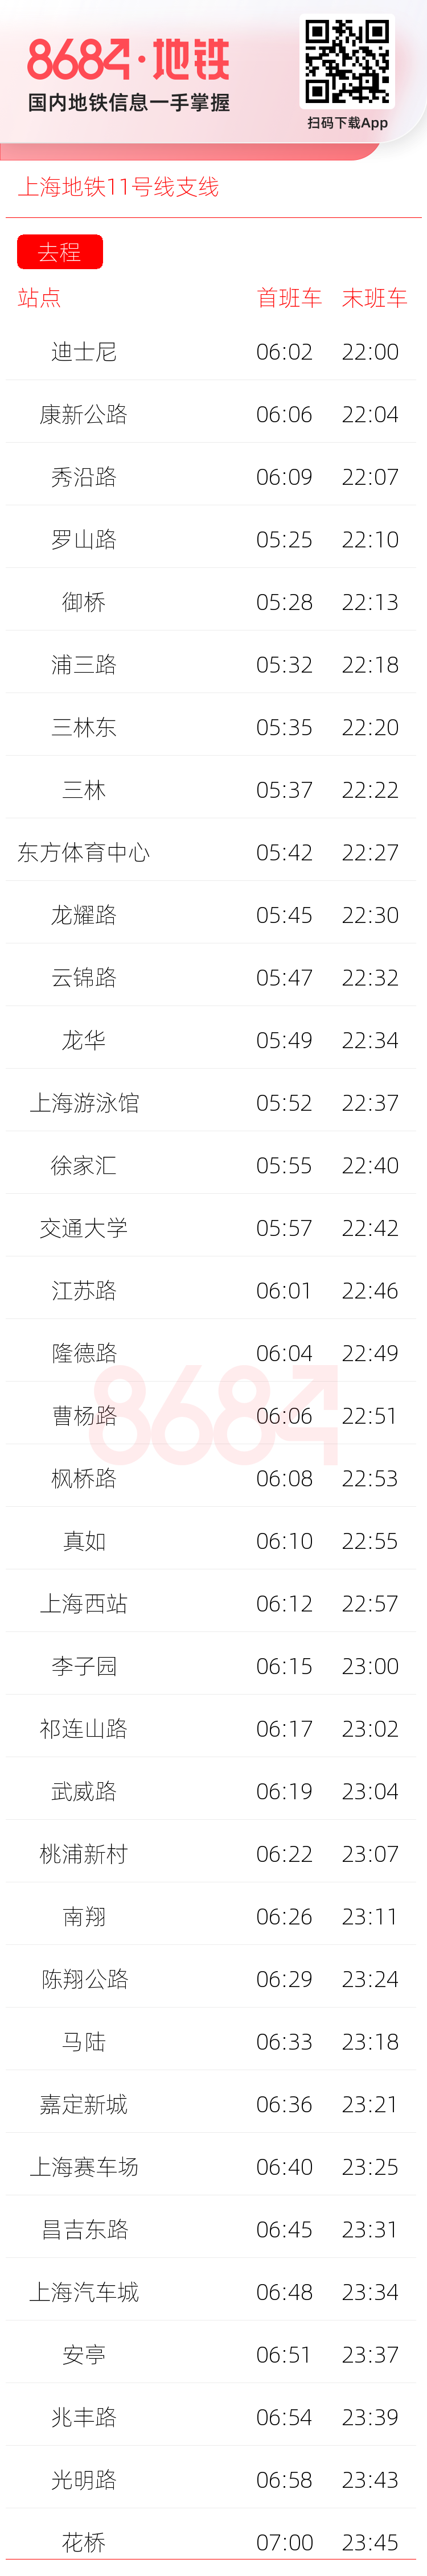 上海地铁11号线支线运营时间表